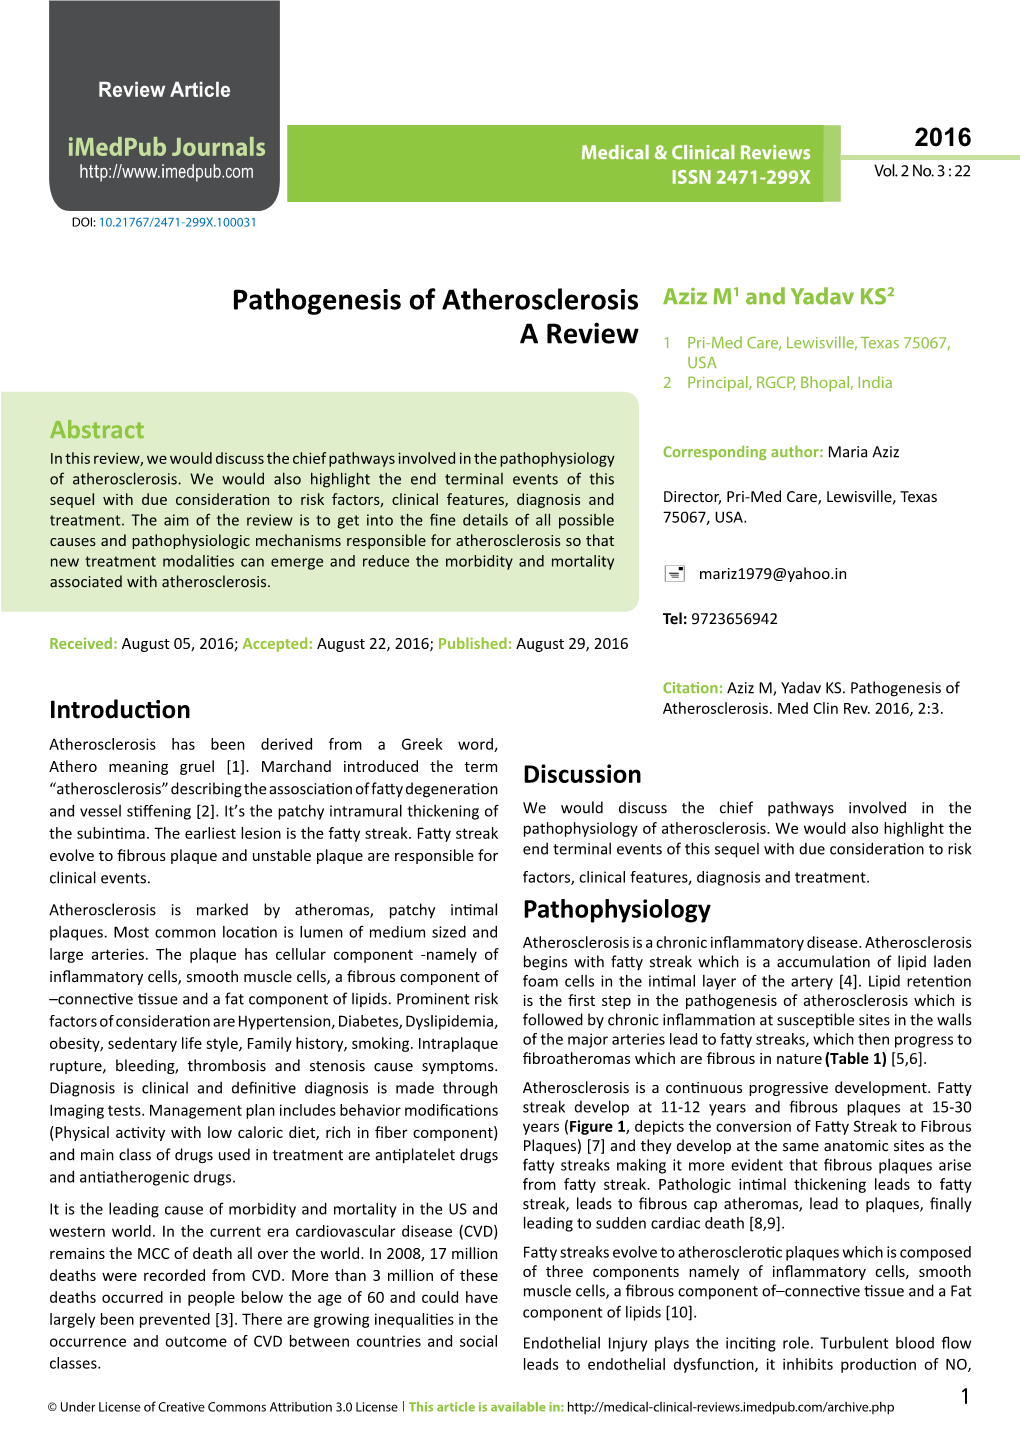 Pathogenesis of Atherosclerosis